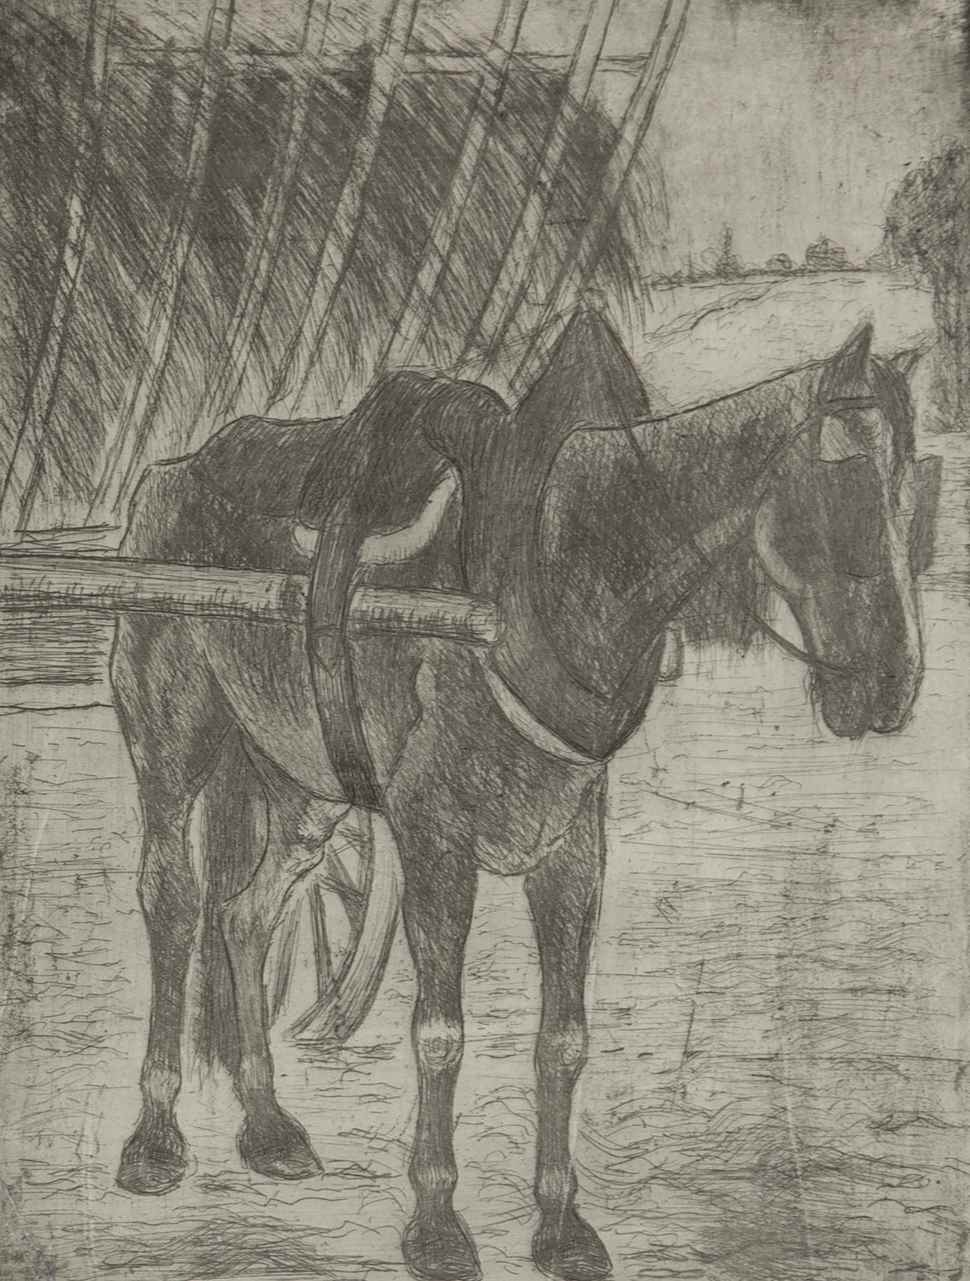 Horse Pulling Hay Cart - Félix Pissarro (1874 - 1897)